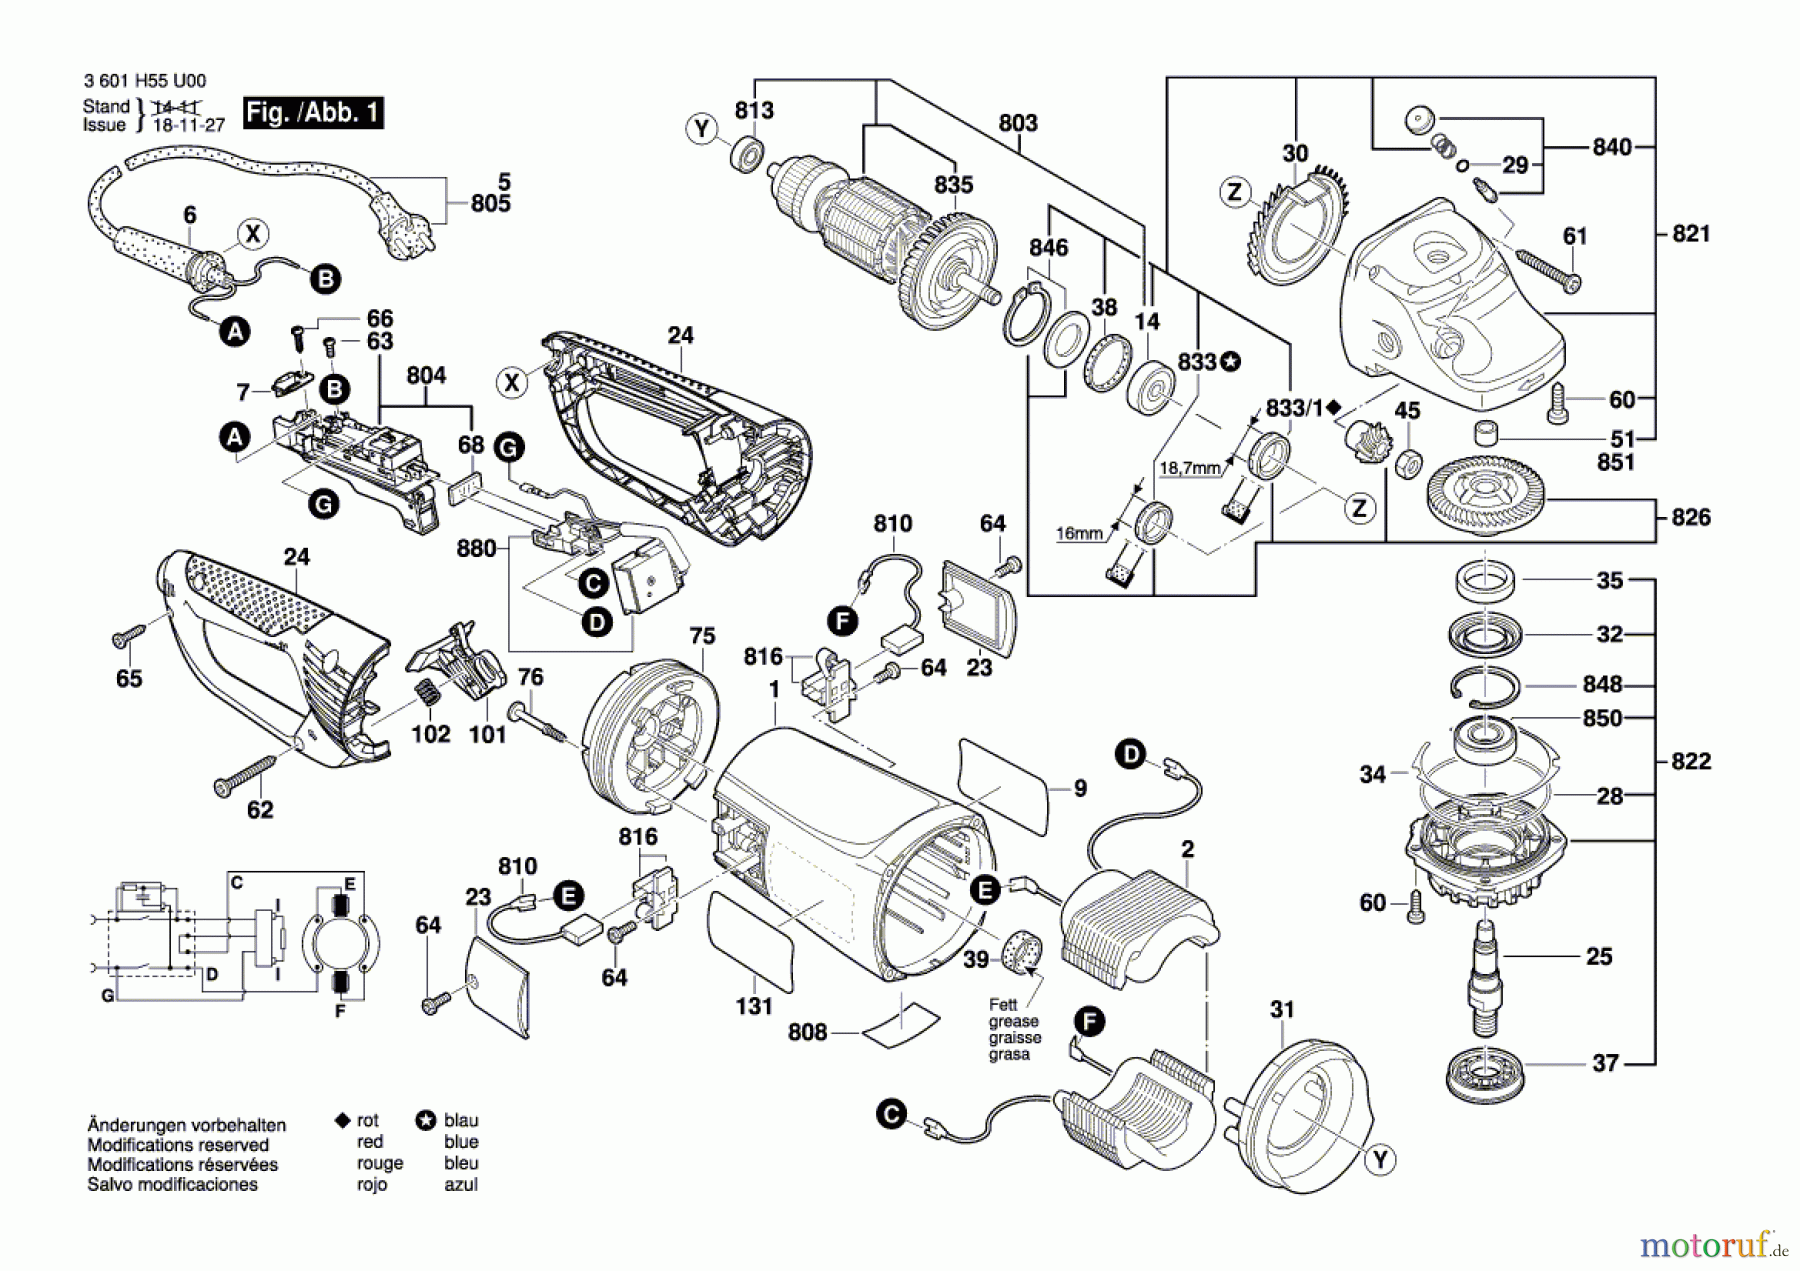  Bosch Werkzeug Winkelschleifer GWS 26-180 JBV Seite 1